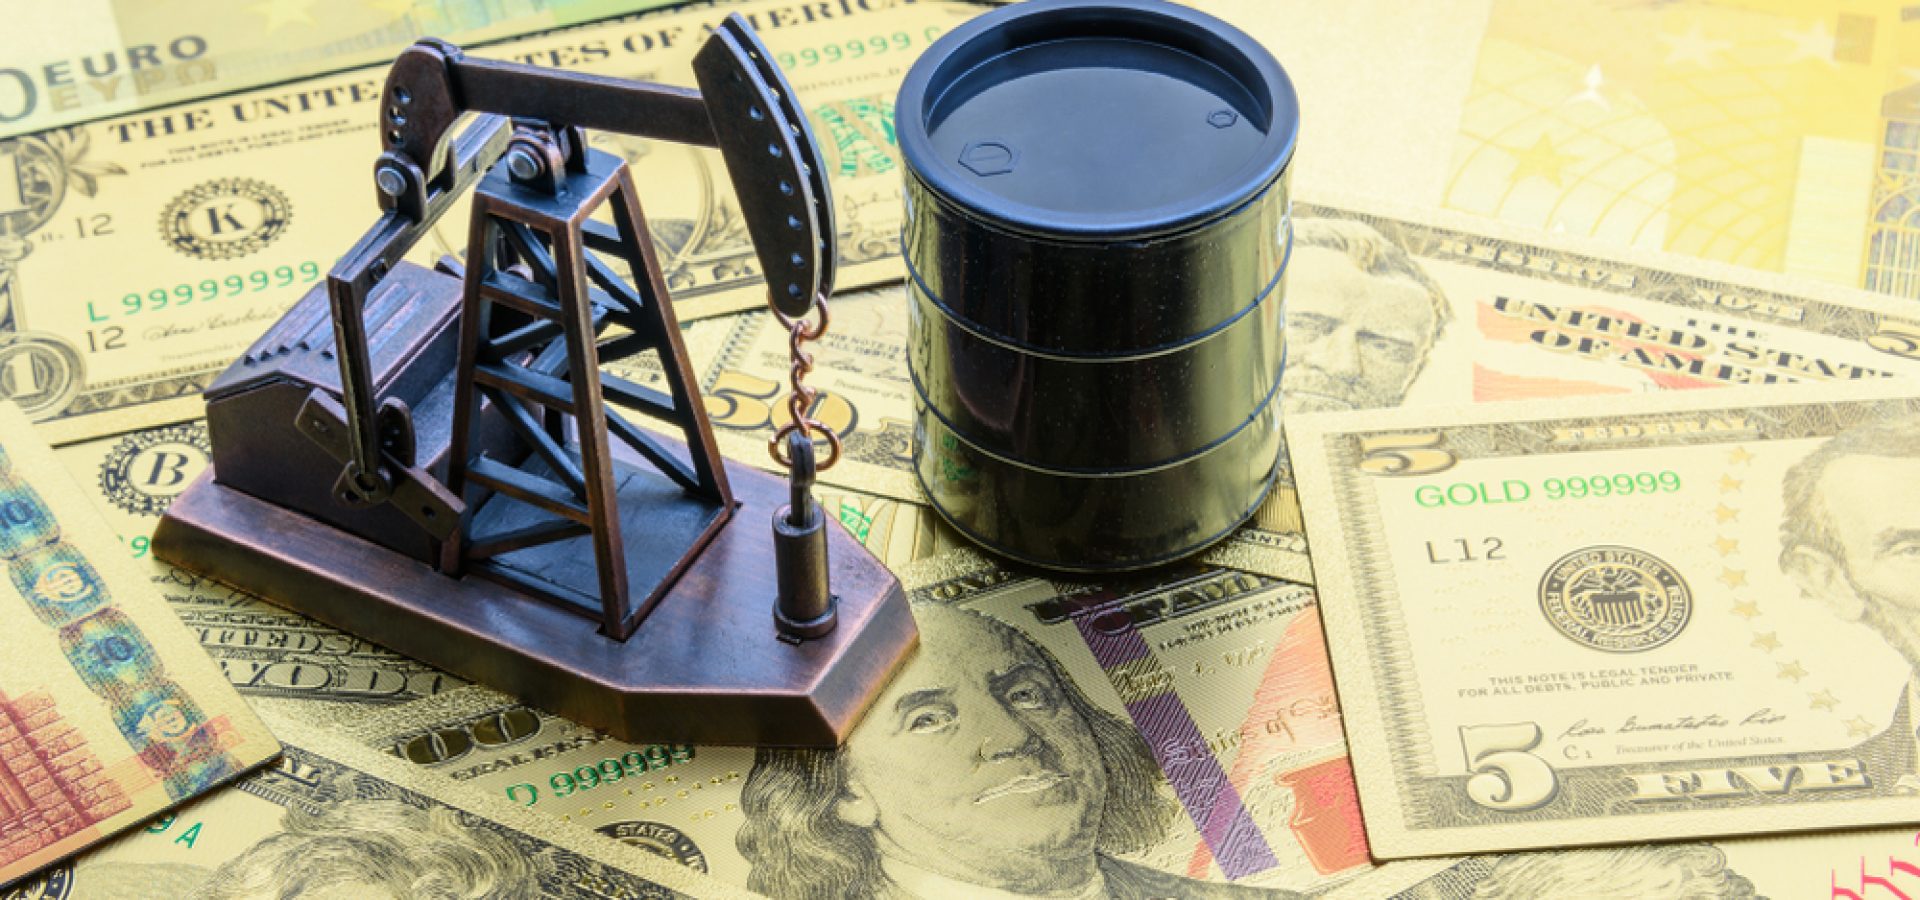 Wibest – US China Tariffs: Oil barrel and pumpjack over US dollar bills.